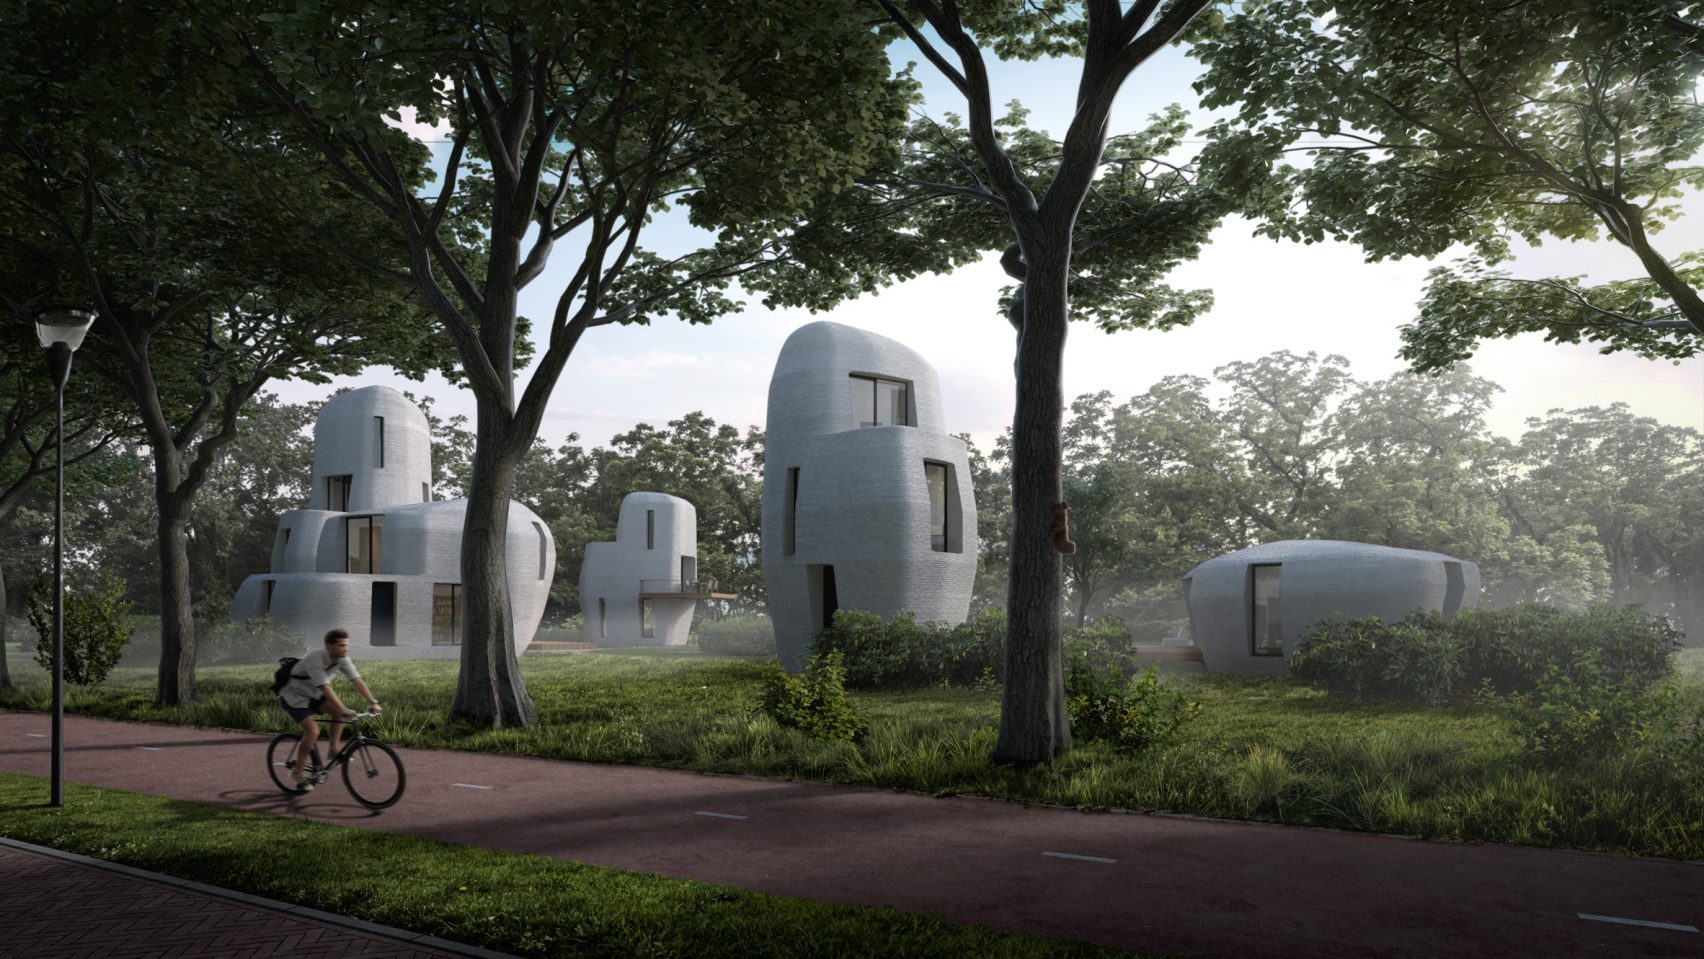 에인트호벤에 사람이 거주할 3D 프린팅 집 짓는다